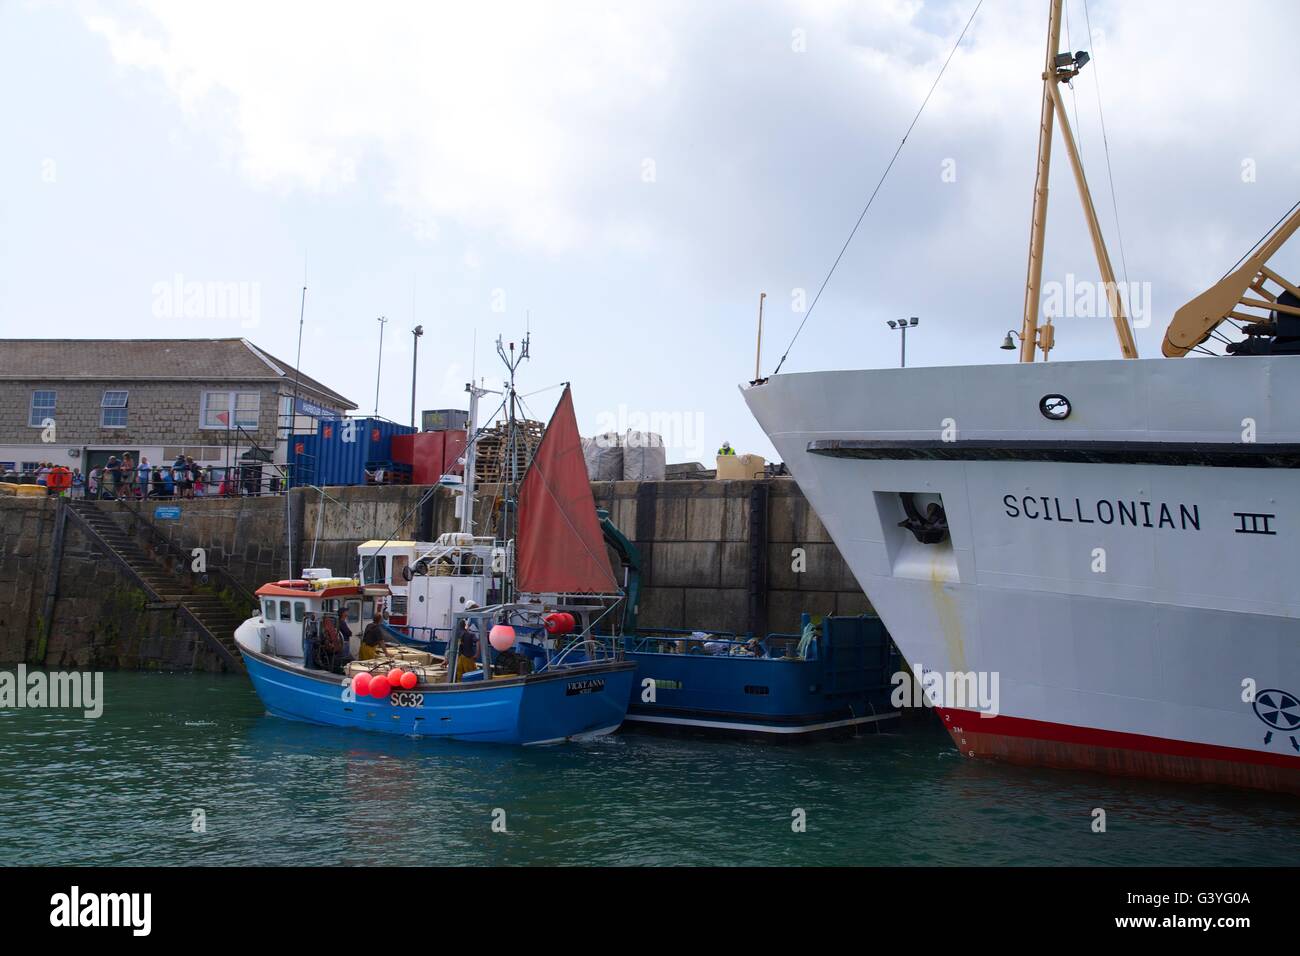 Scillonian III Passagier-Fähre und Angelboote/Fischerboote im Hafen, Str. Marys, Isles of Scilly, Cornwall, England, UK, GB Stockfoto